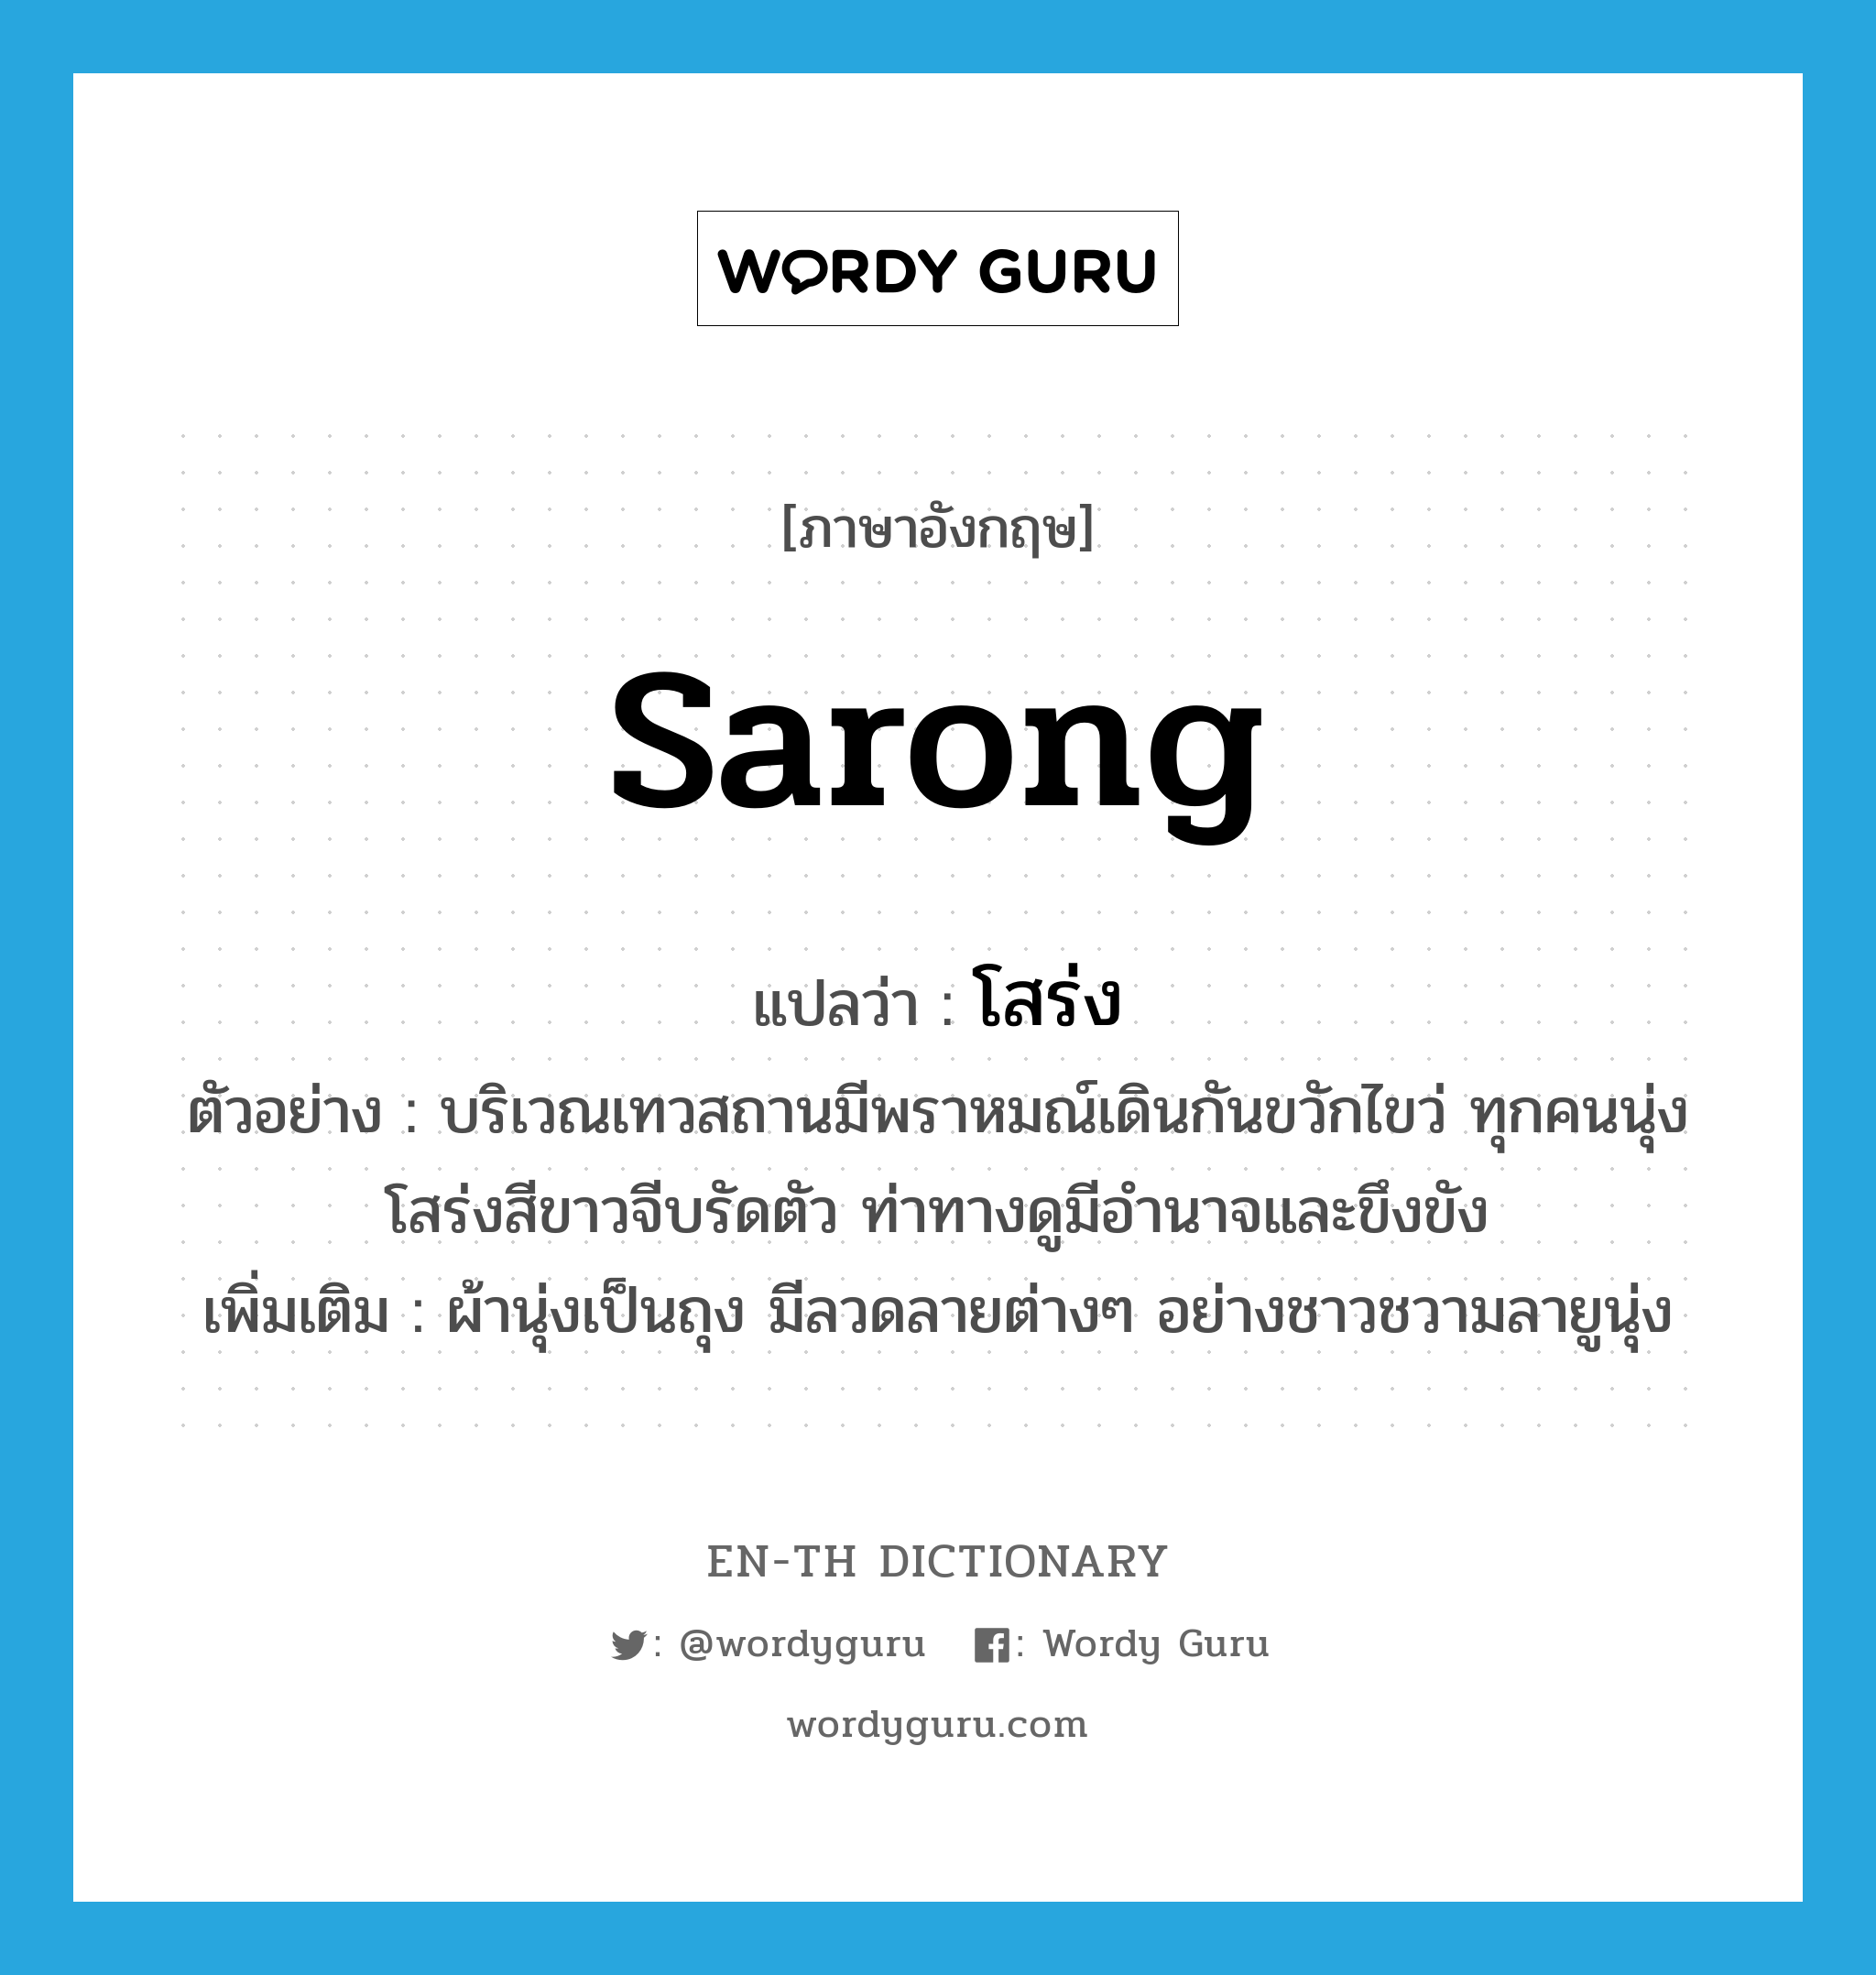 sarong แปลว่า?, คำศัพท์ภาษาอังกฤษ sarong แปลว่า โสร่ง ประเภท N ตัวอย่าง บริเวณเทวสถานมีพราหมณ์เดินกันขวักไขว่ ทุกคนนุ่งโสร่งสีขาวจีบรัดตัว ท่าทางดูมีอำนาจและขึงขัง เพิ่มเติม ผ้านุ่งเป็นถุง มีลวดลายต่างๆ อย่างชาวชวามลายูนุ่ง หมวด N